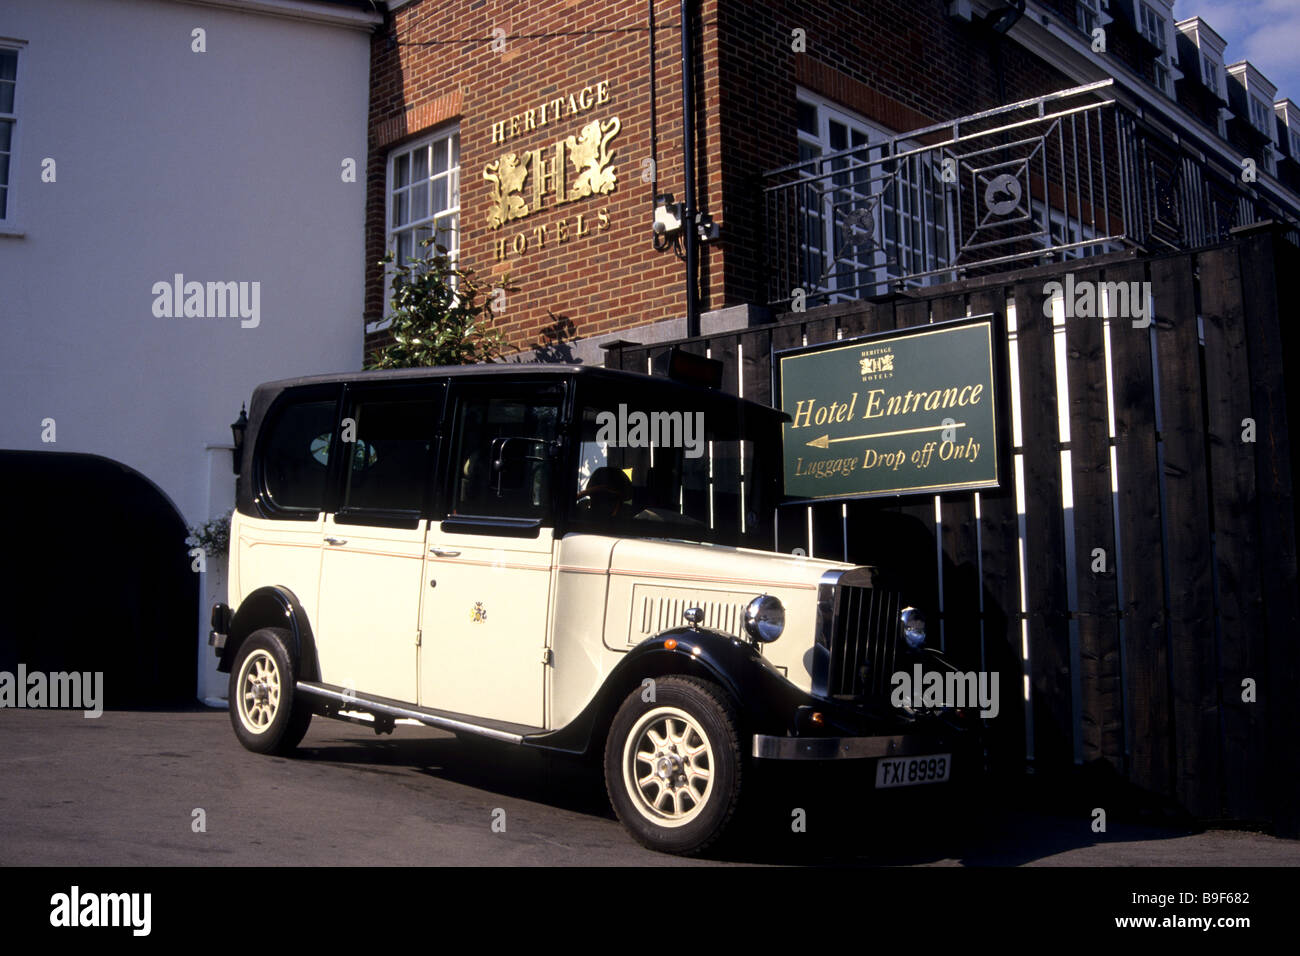 Hôtel et vieil anglais taxi cab, Marlow, Buckinghamshire, UK Banque D'Images